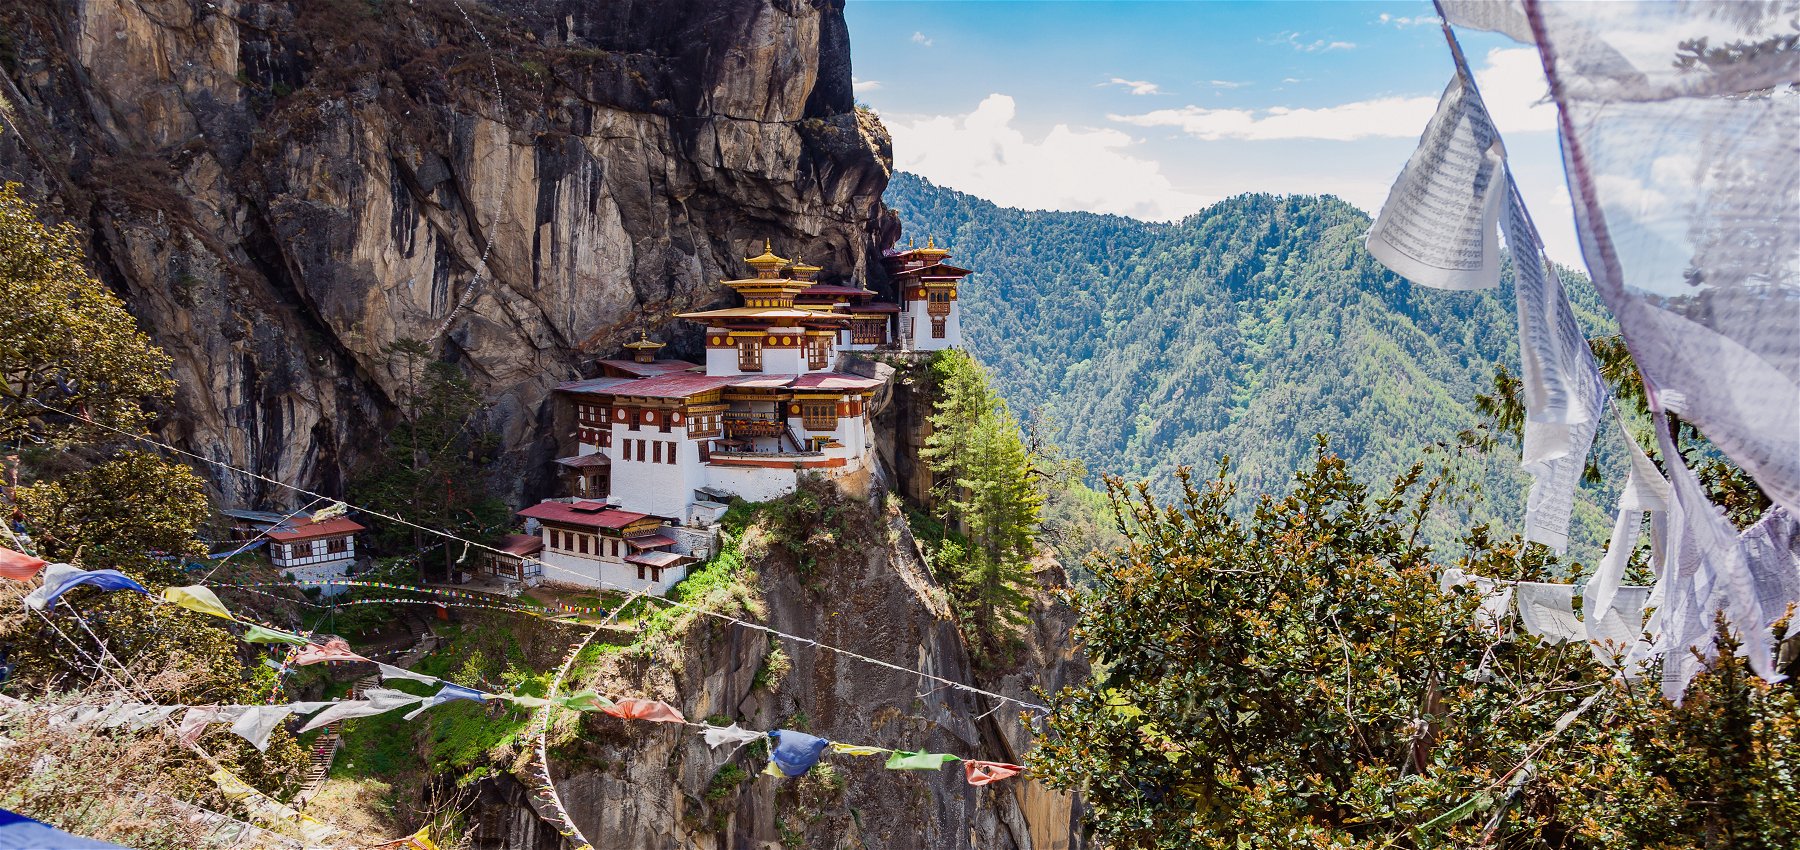 Trekking in the Kingdom of Happiness - Bhutan